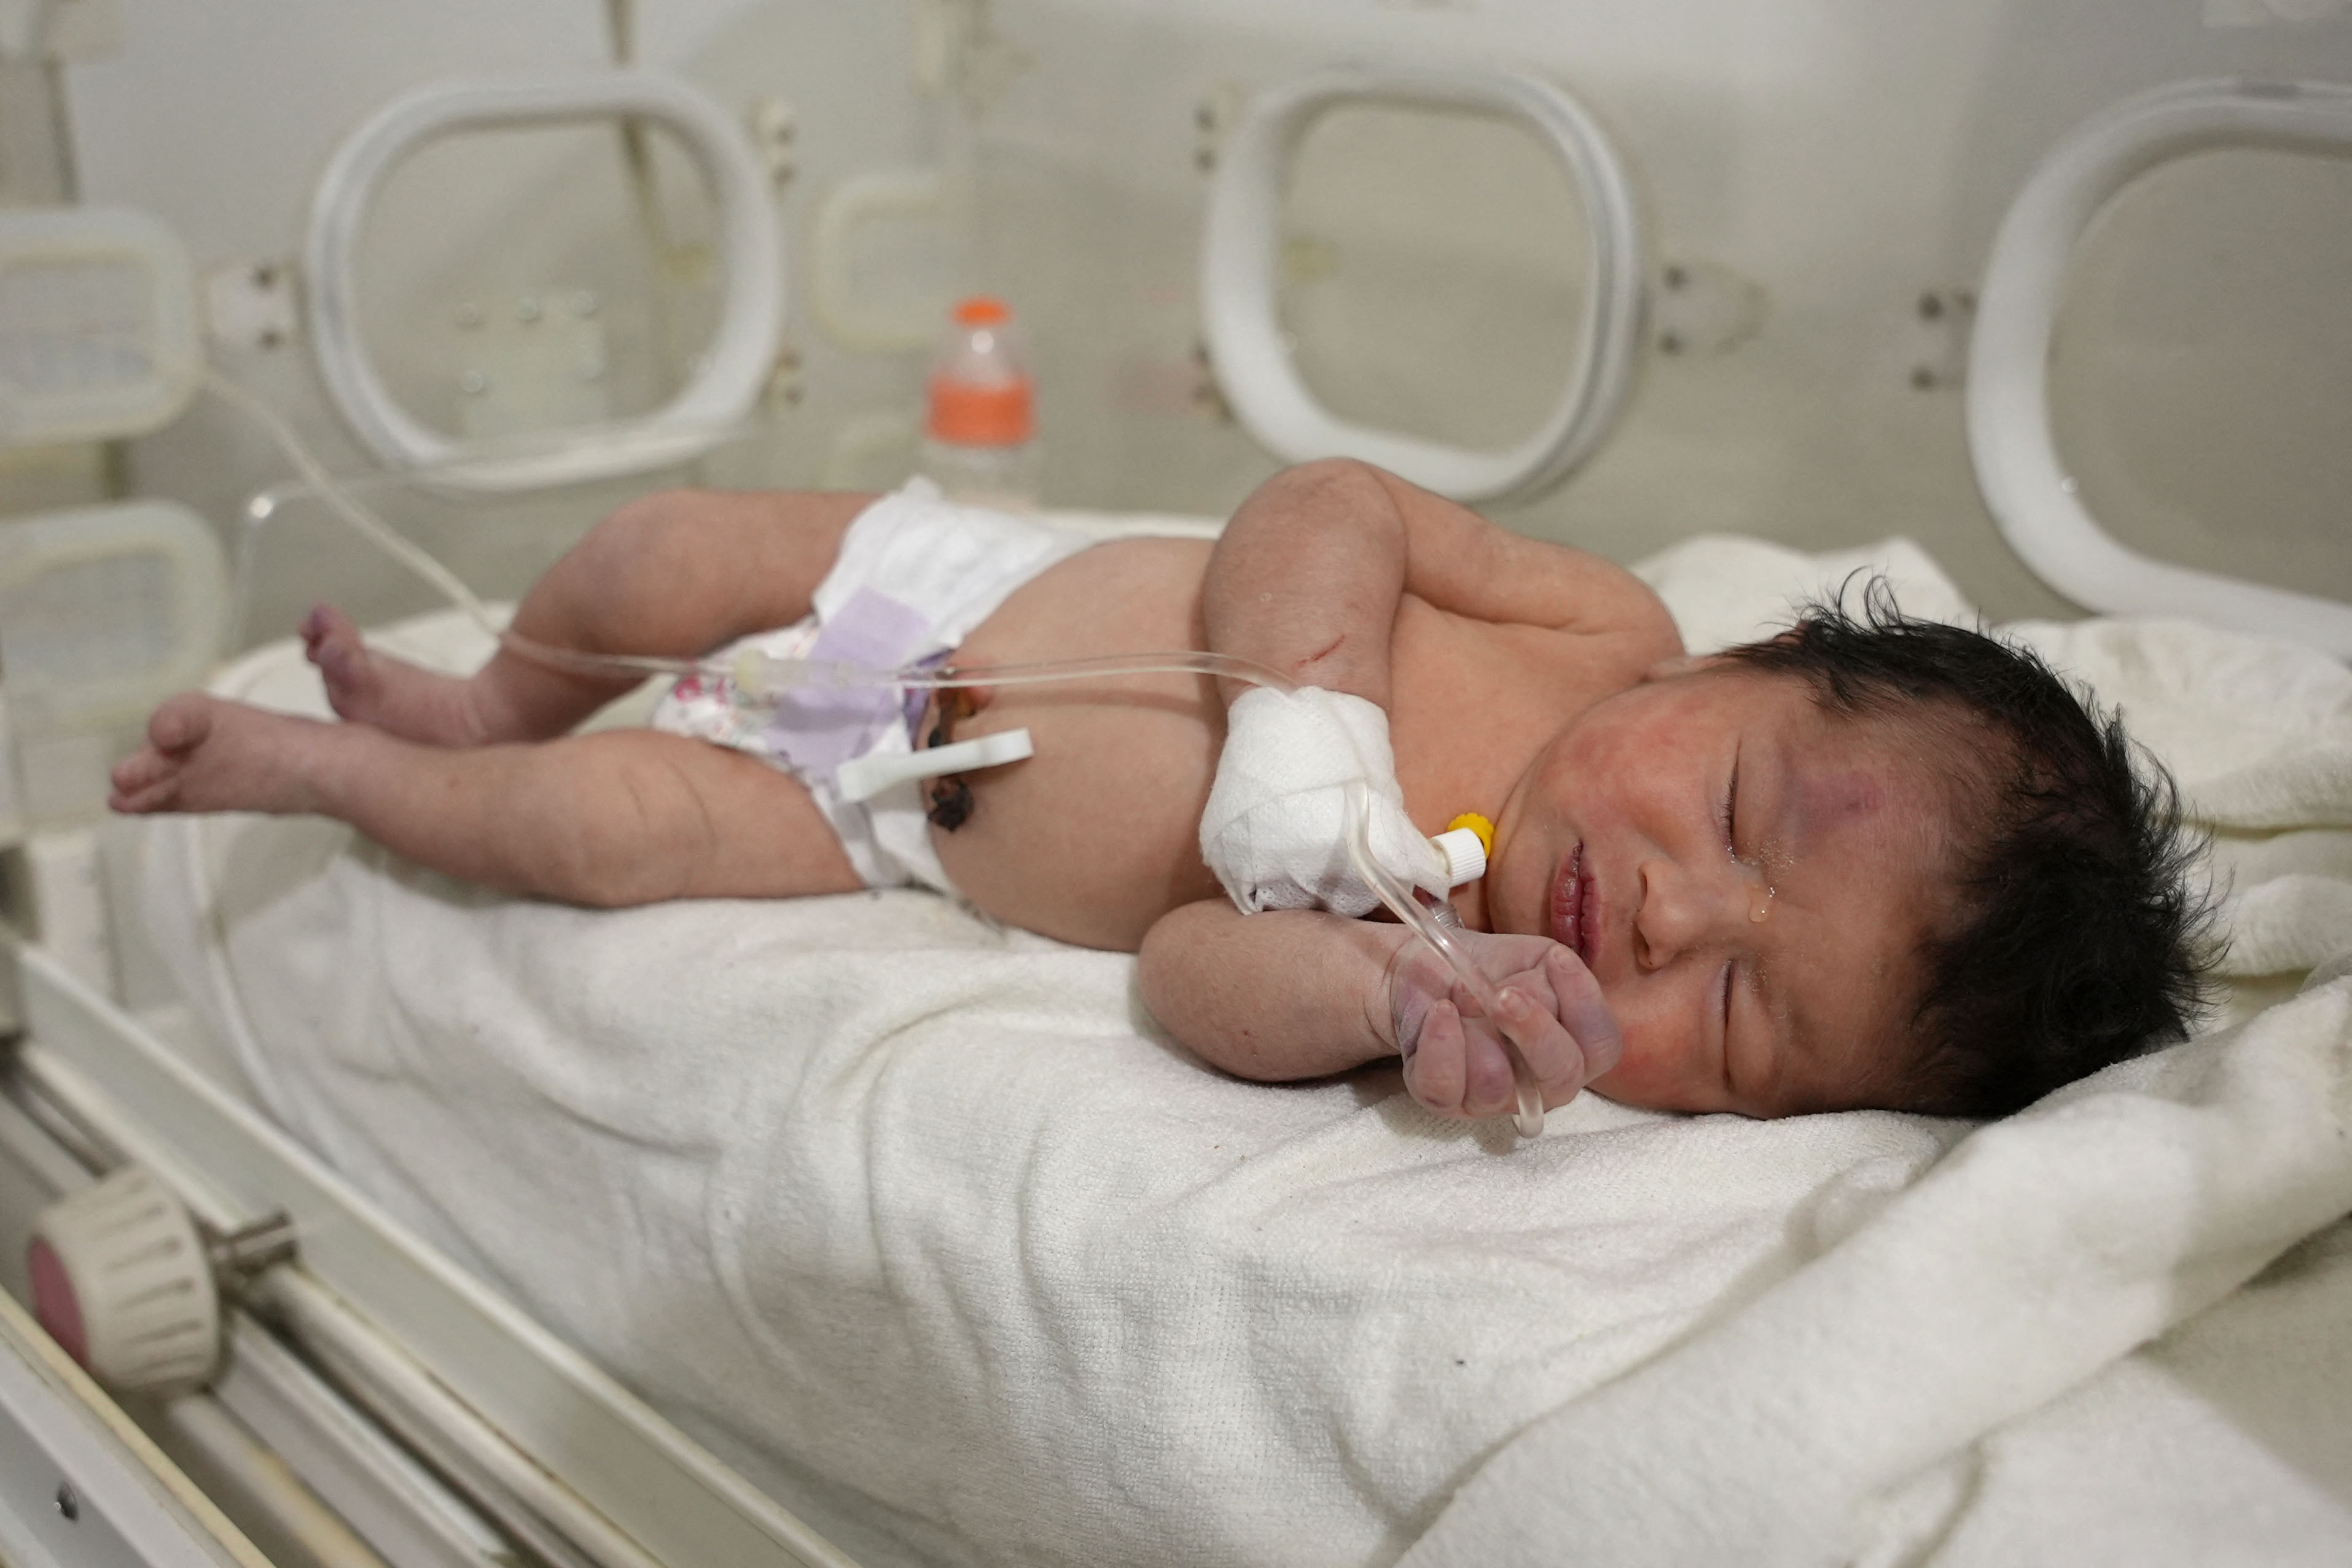 Una bebé recién nacida que fue encontrada todavía atada a su madre por el cordón umbilical permanece en un hospital de Siria. (RAMI AL SAYED / AFP).